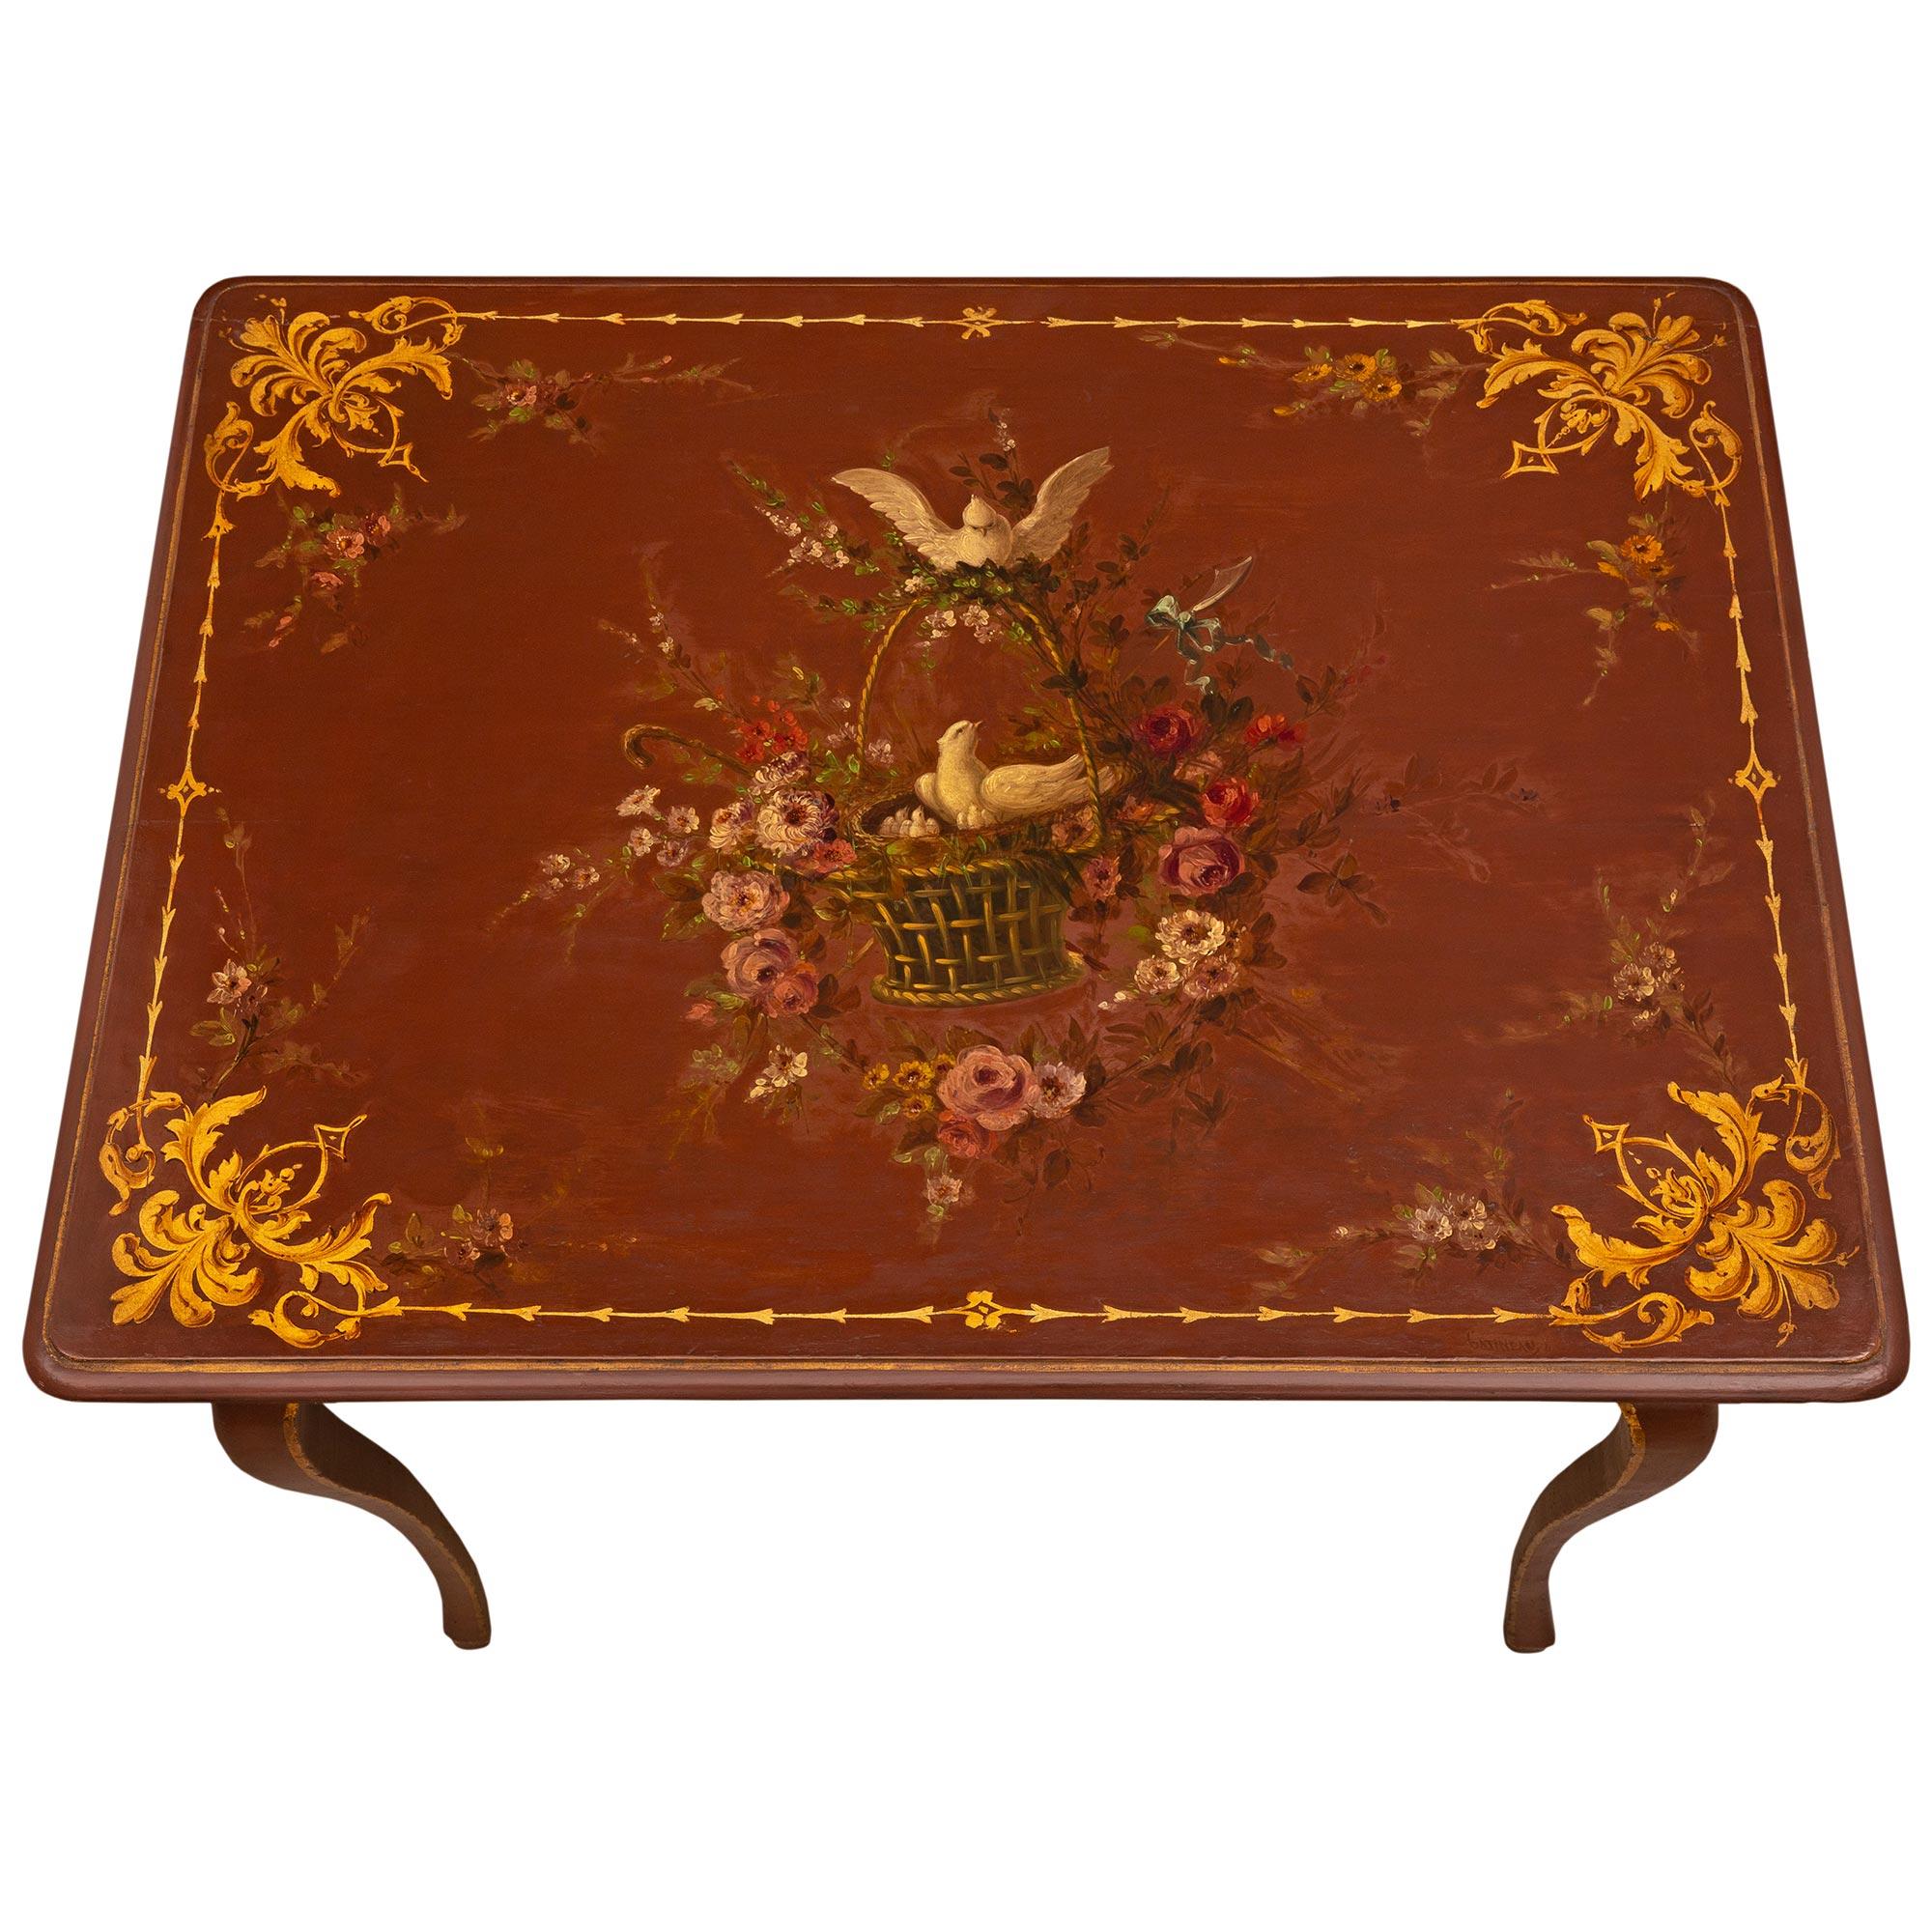 Ein charmanter französischer Beistelltisch aus dem 18. Jahrhundert im Stil von Louis XV. Der schöne Tisch steht auf eleganten, spitz zulaufenden Cabriole-Beinen, die mit fein gemalten Filets verziert sind, die jedes Bein hinauf und entlang der